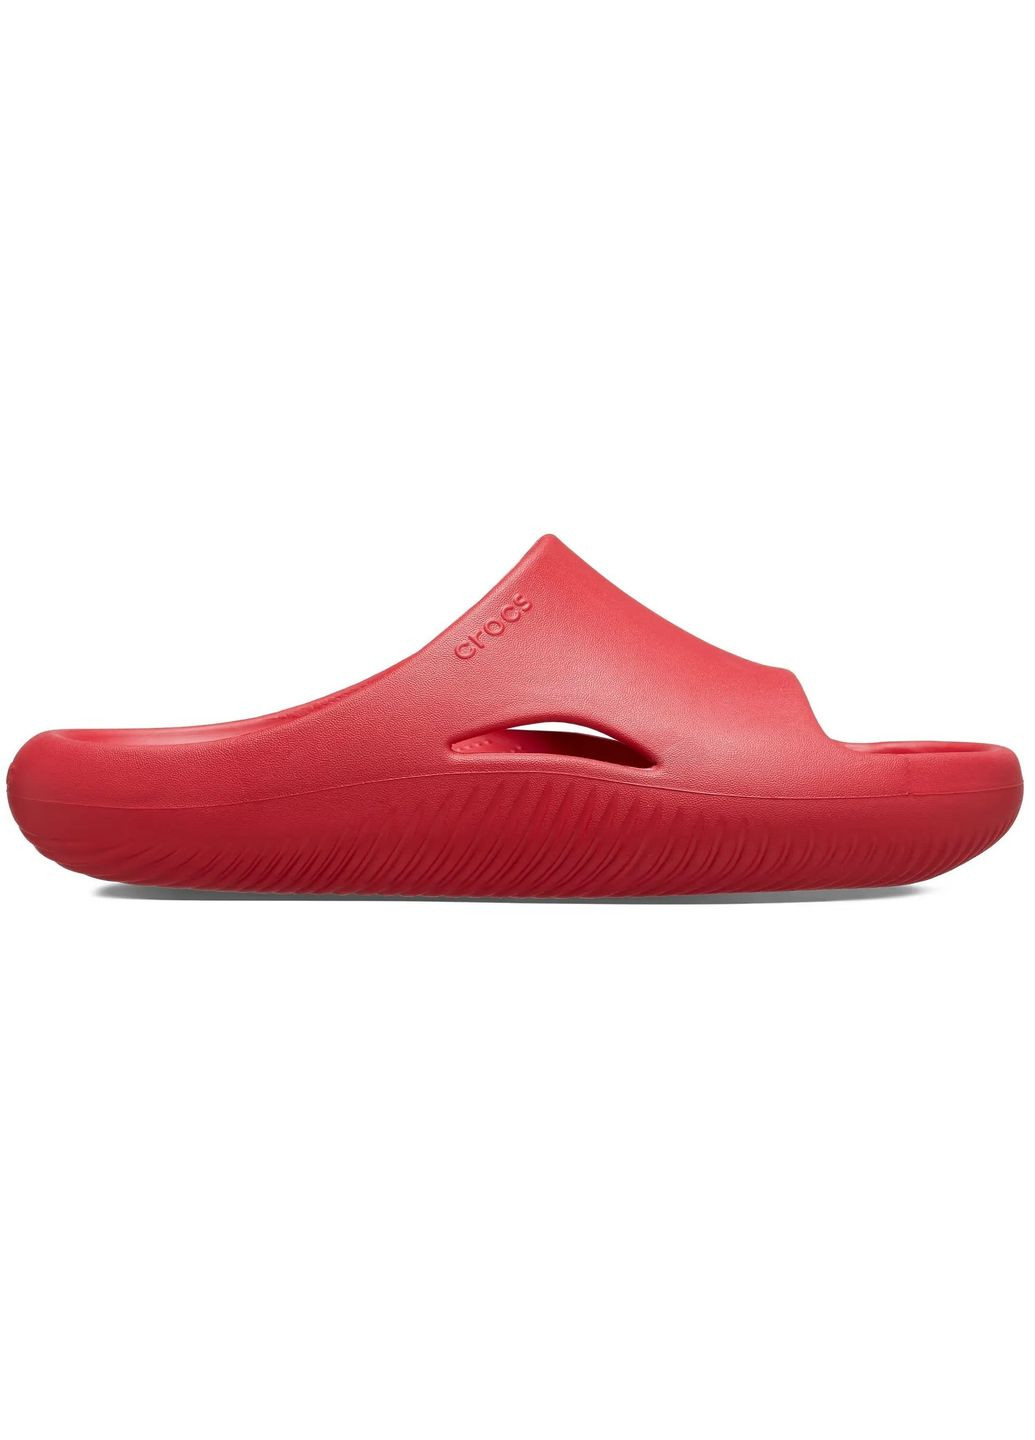 Красные женские кроксы mellow slide varsity red m4w6-36-23 см 208392 Crocs